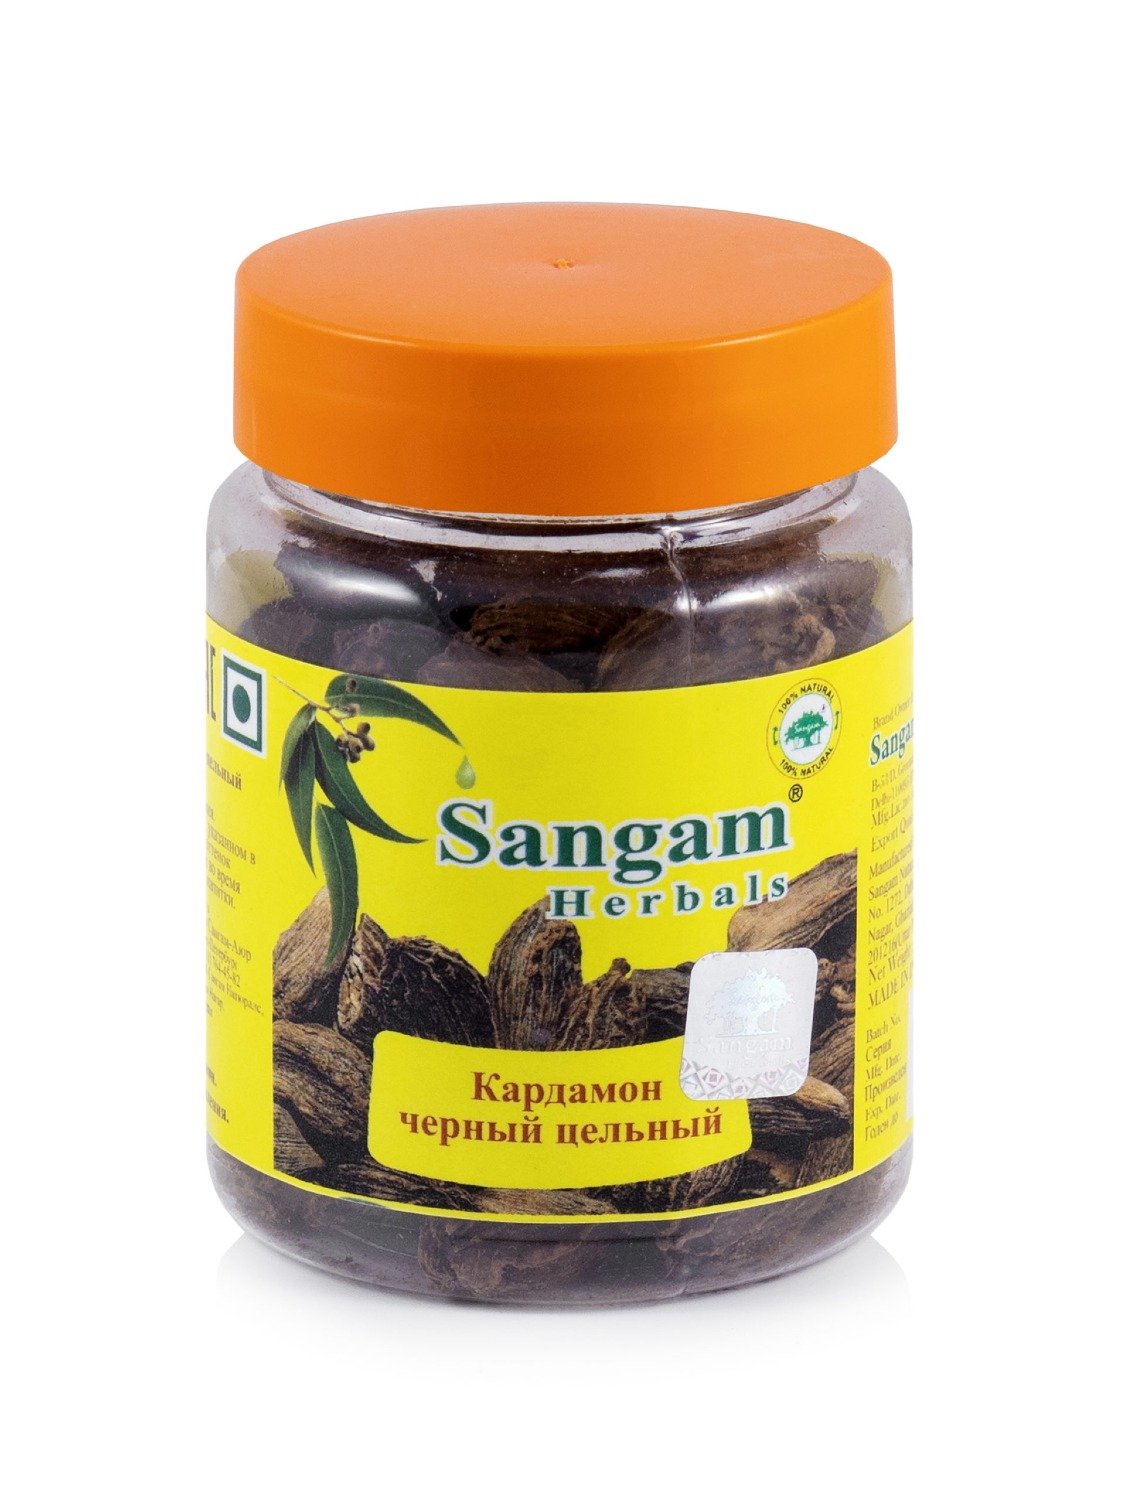 Кардамон черный цельный Sangam Herbals (50 г). 